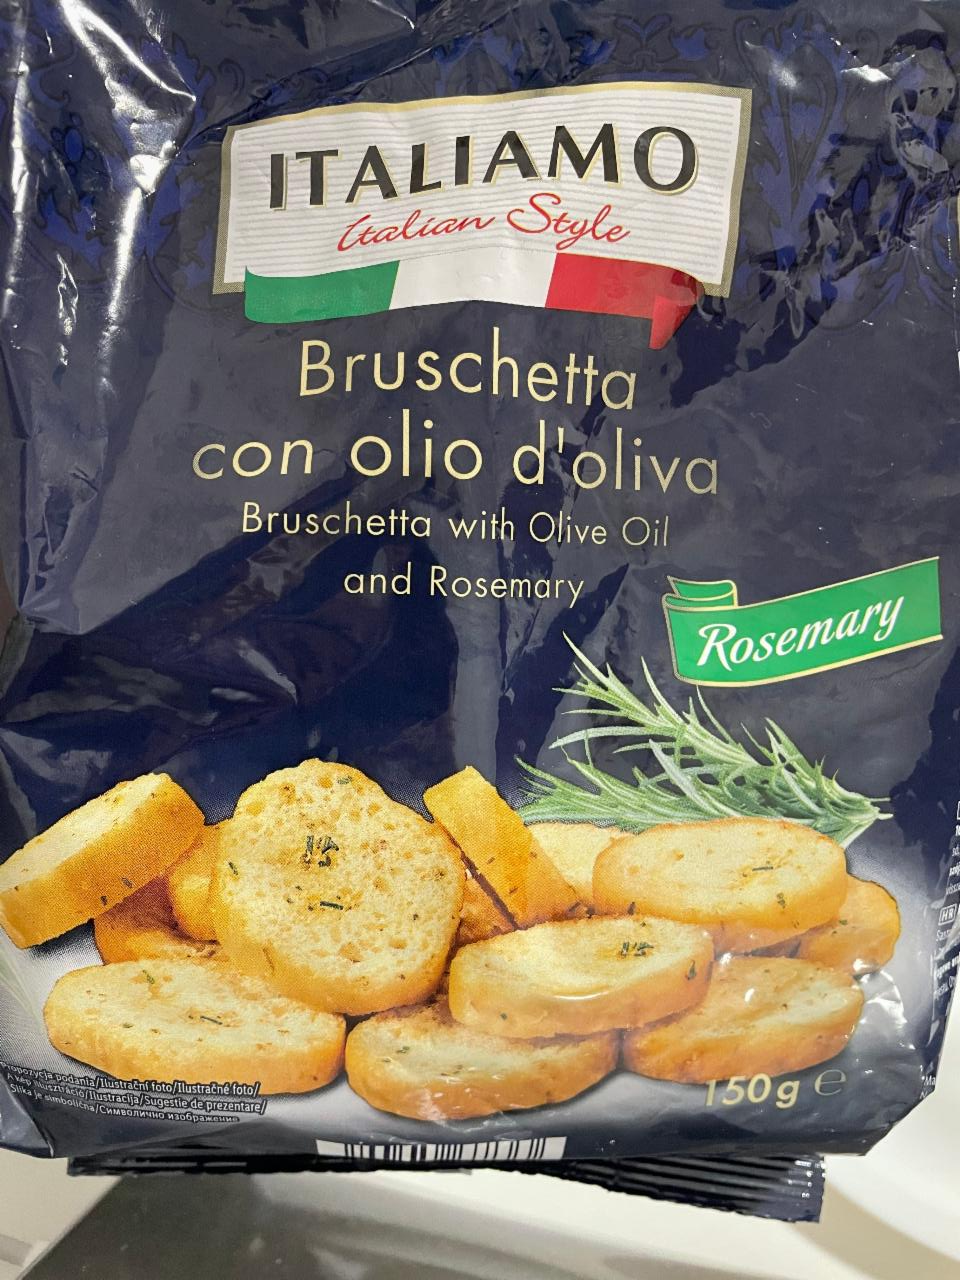 Фото - сухари из багета с оливковым маслом и розмарином Italiamo